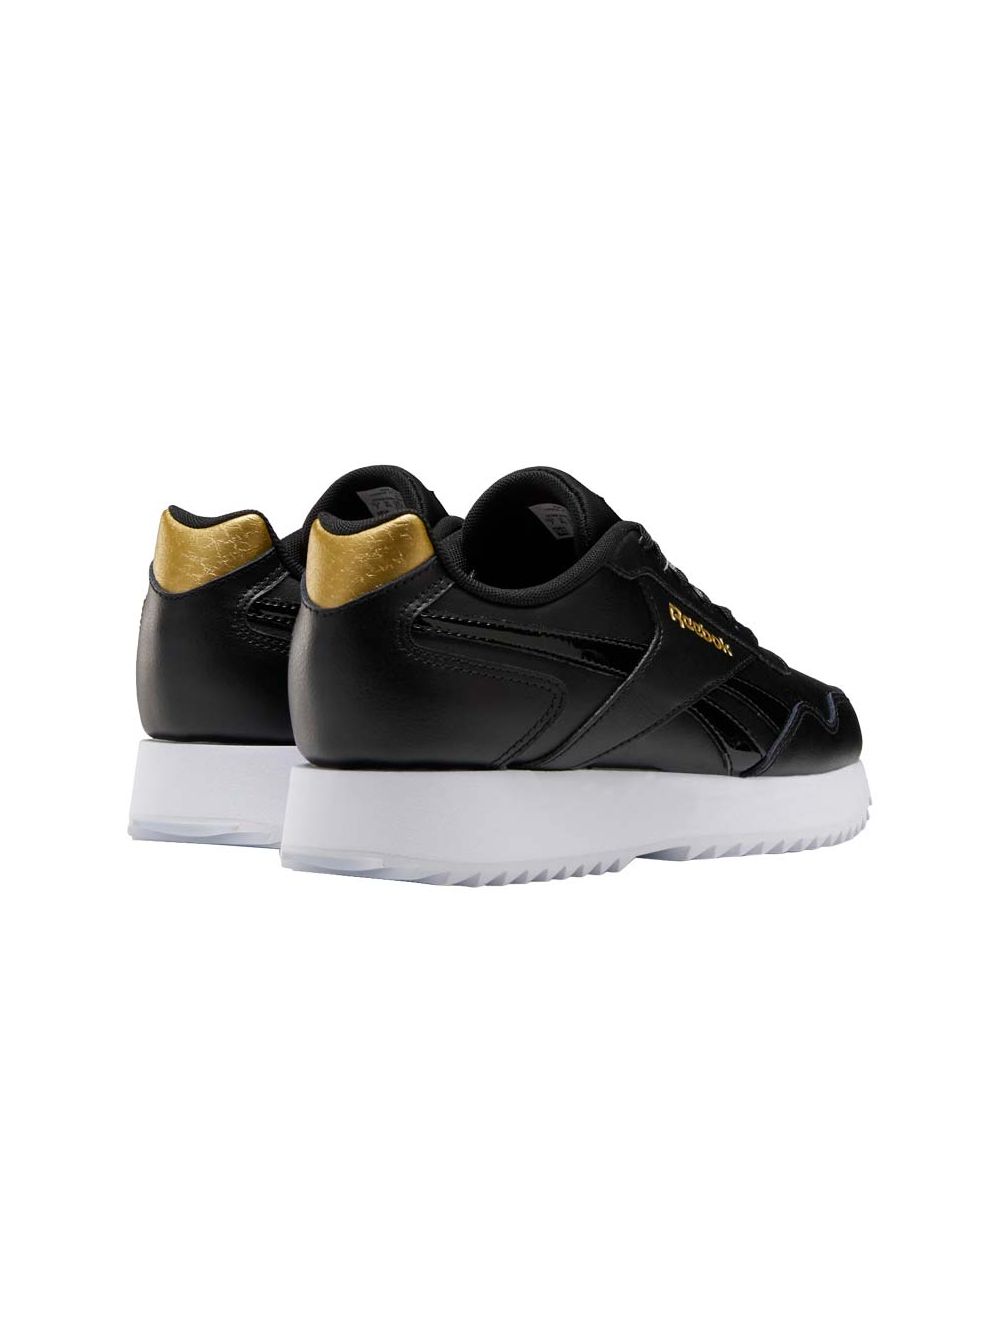 Reebok Royal Glide Sneaker Youth Gold | Studi